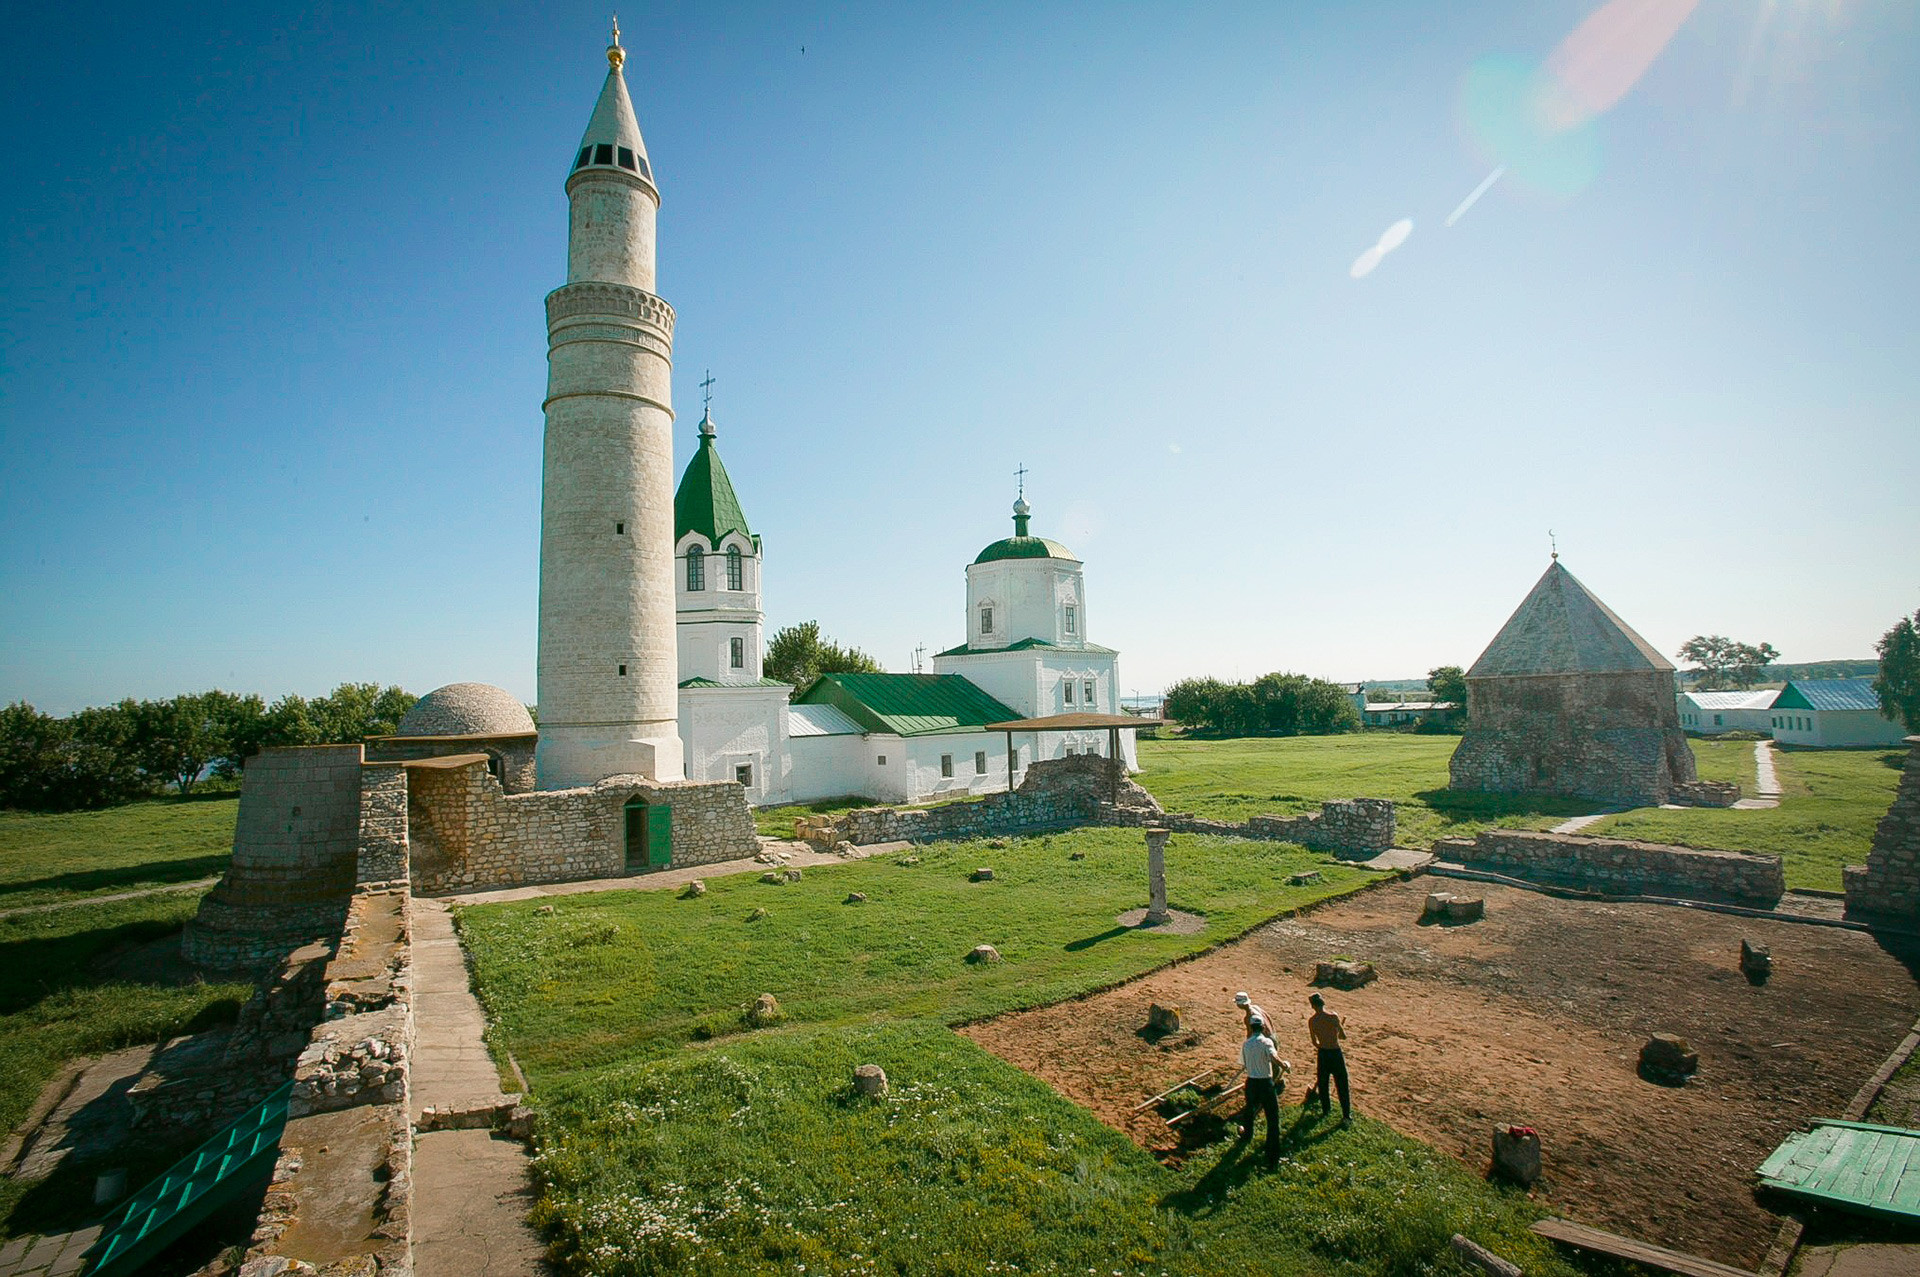 Остатоци од древниот град Болгар на Волга, главниот град на средновековната Волшко-Камска Бугарија (основан во 10 век). Споменици од 13 и од 14 век. Големо минаре и урнатините на Главната џамија од 14 век. Во позадина е Храмот на Успение на Пресвета Богородица од 18 век.